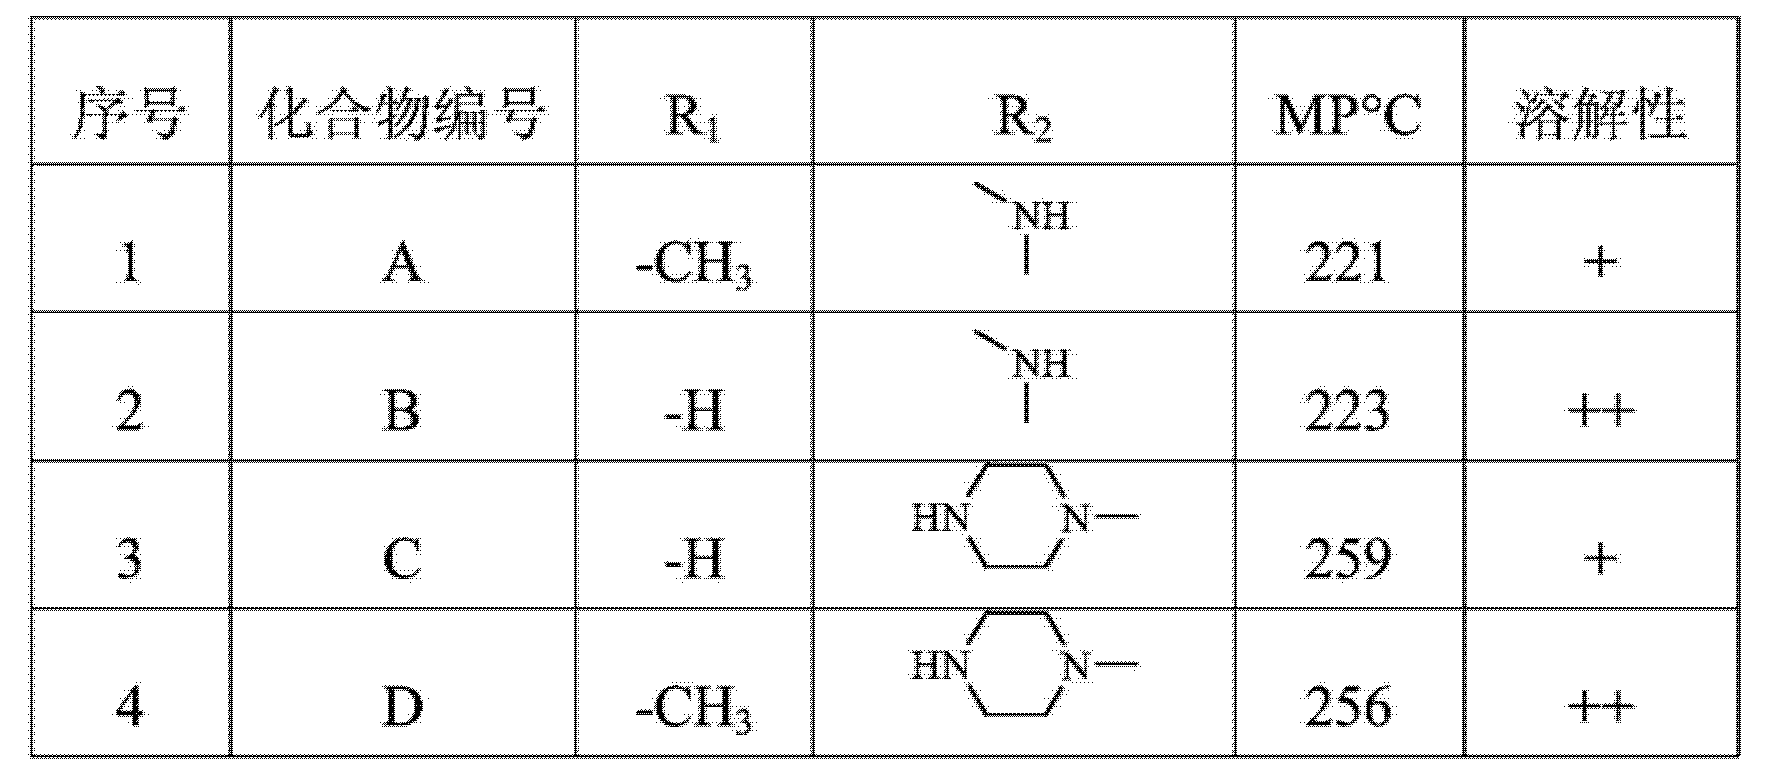 4β氮取代呋喃叔胺类鬼臼毒素衍生物及其制备方法与应用